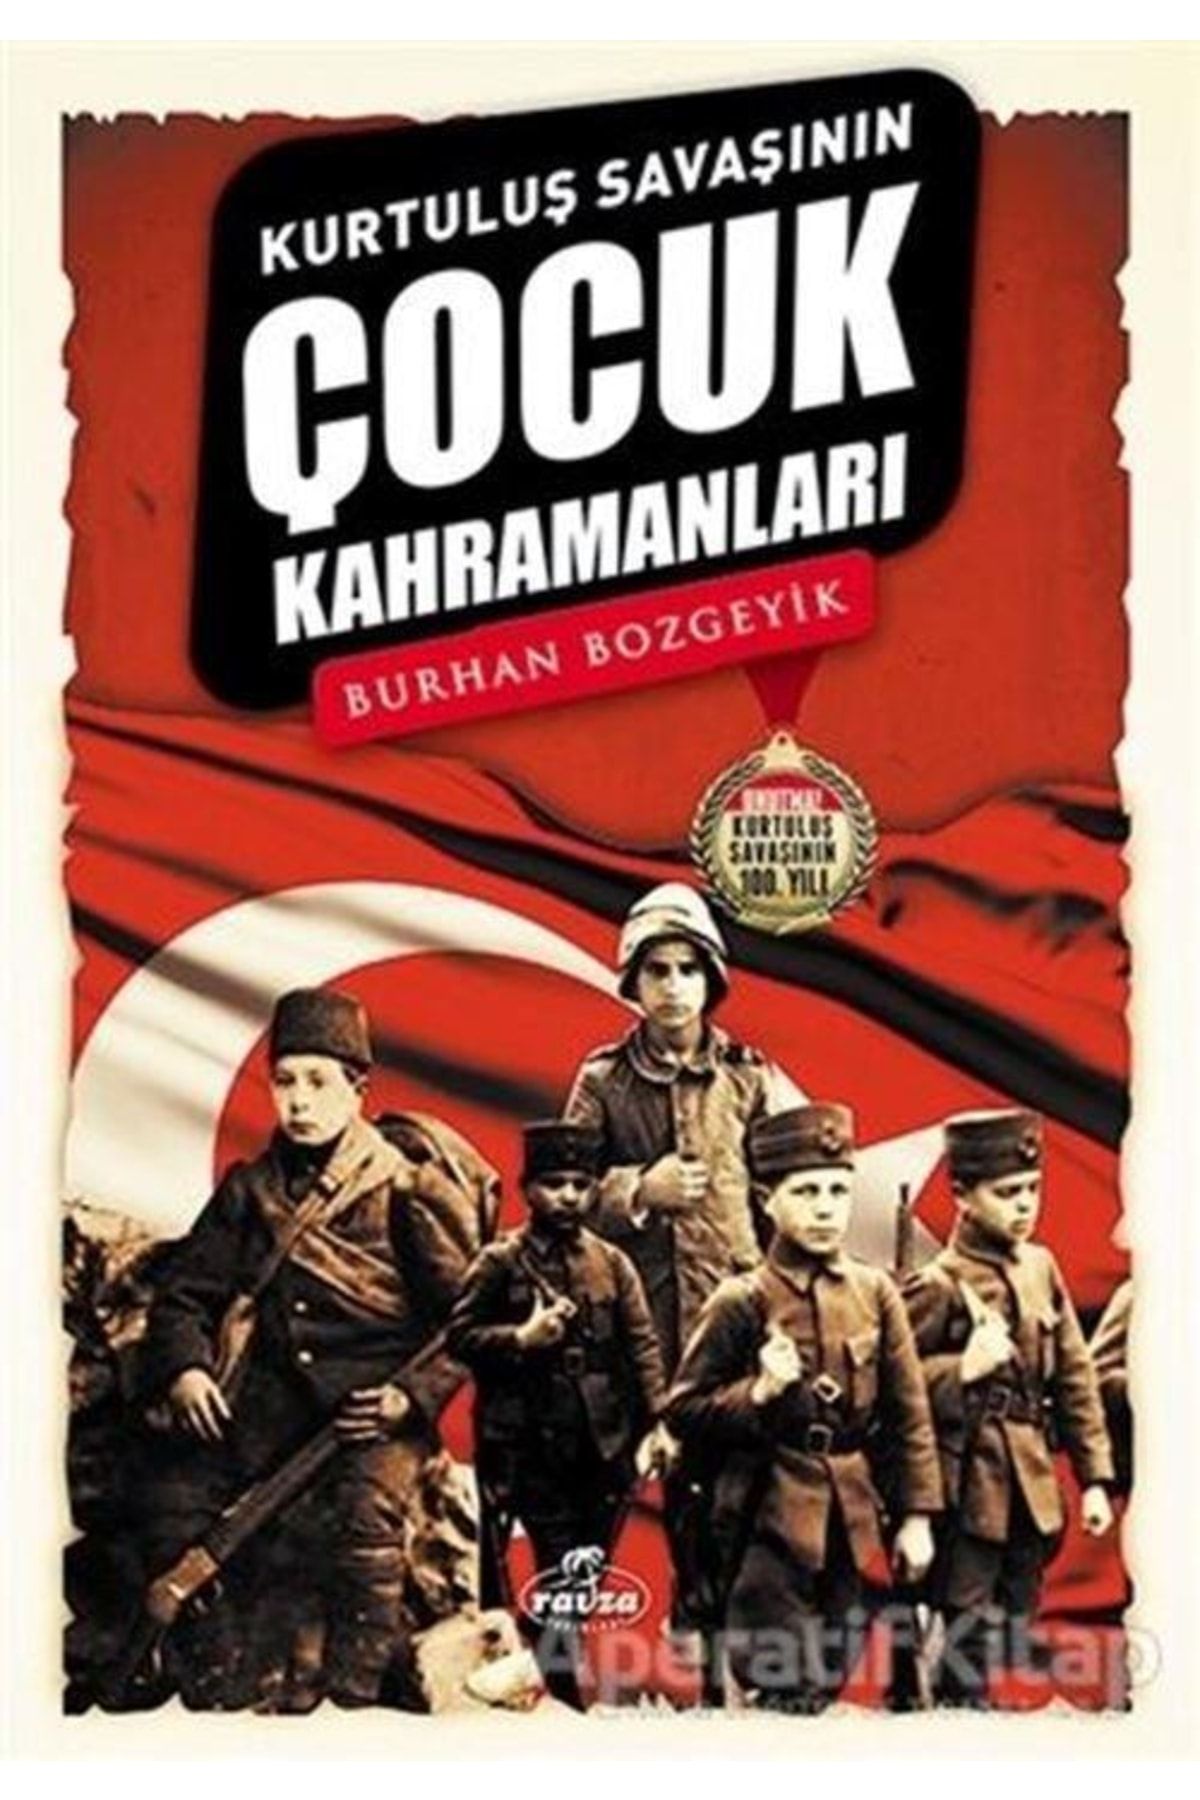 Ravza Yayınları Kurtuluş Savaşının Çocuk Kahramanları - Burhan Bozgeyik -